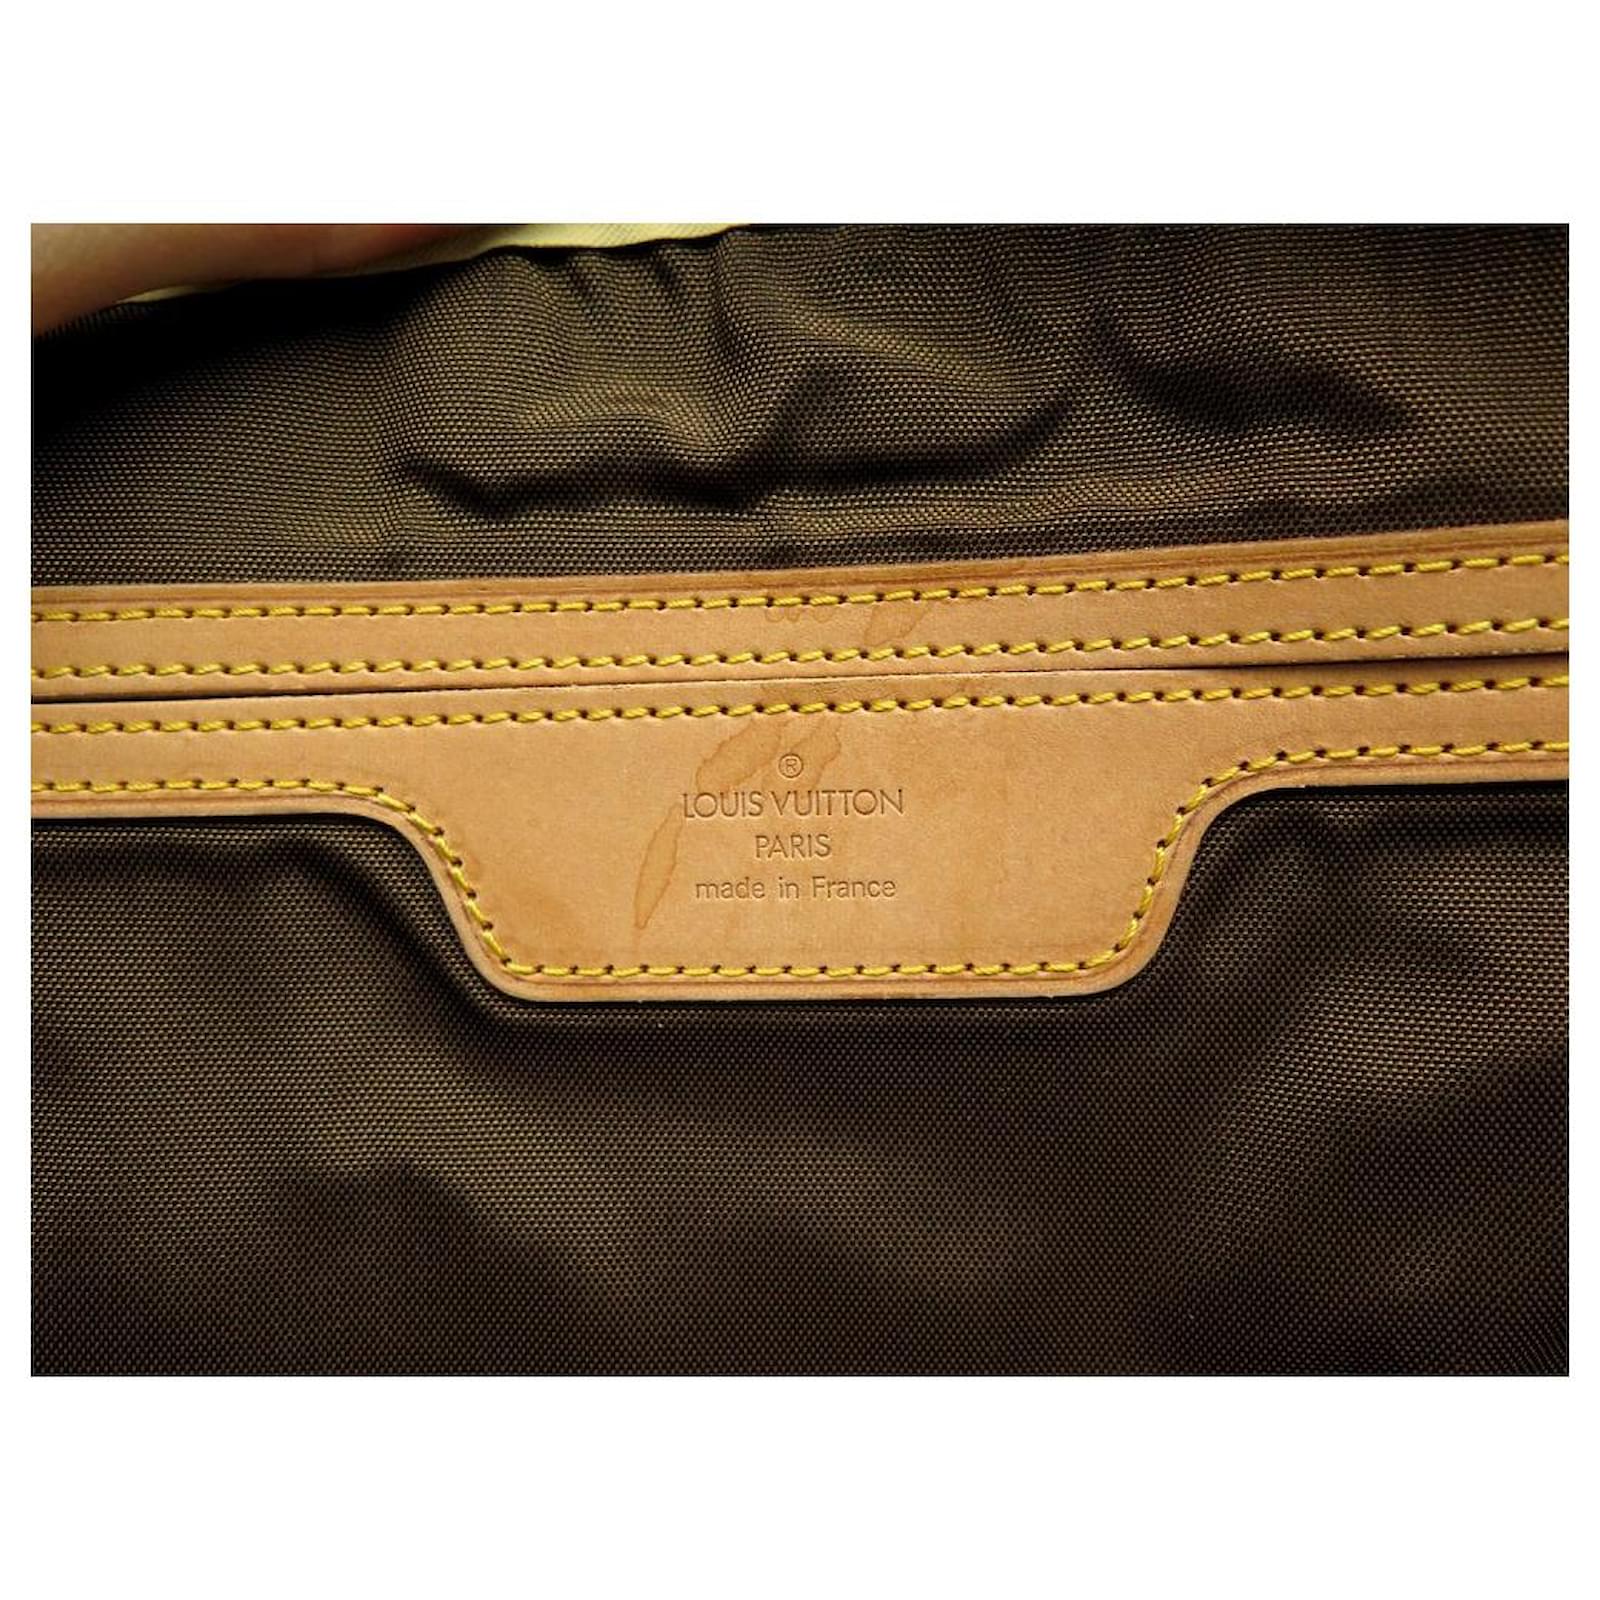 Cloth travel bag Louis Vuitton Brown in Cloth - 32178612